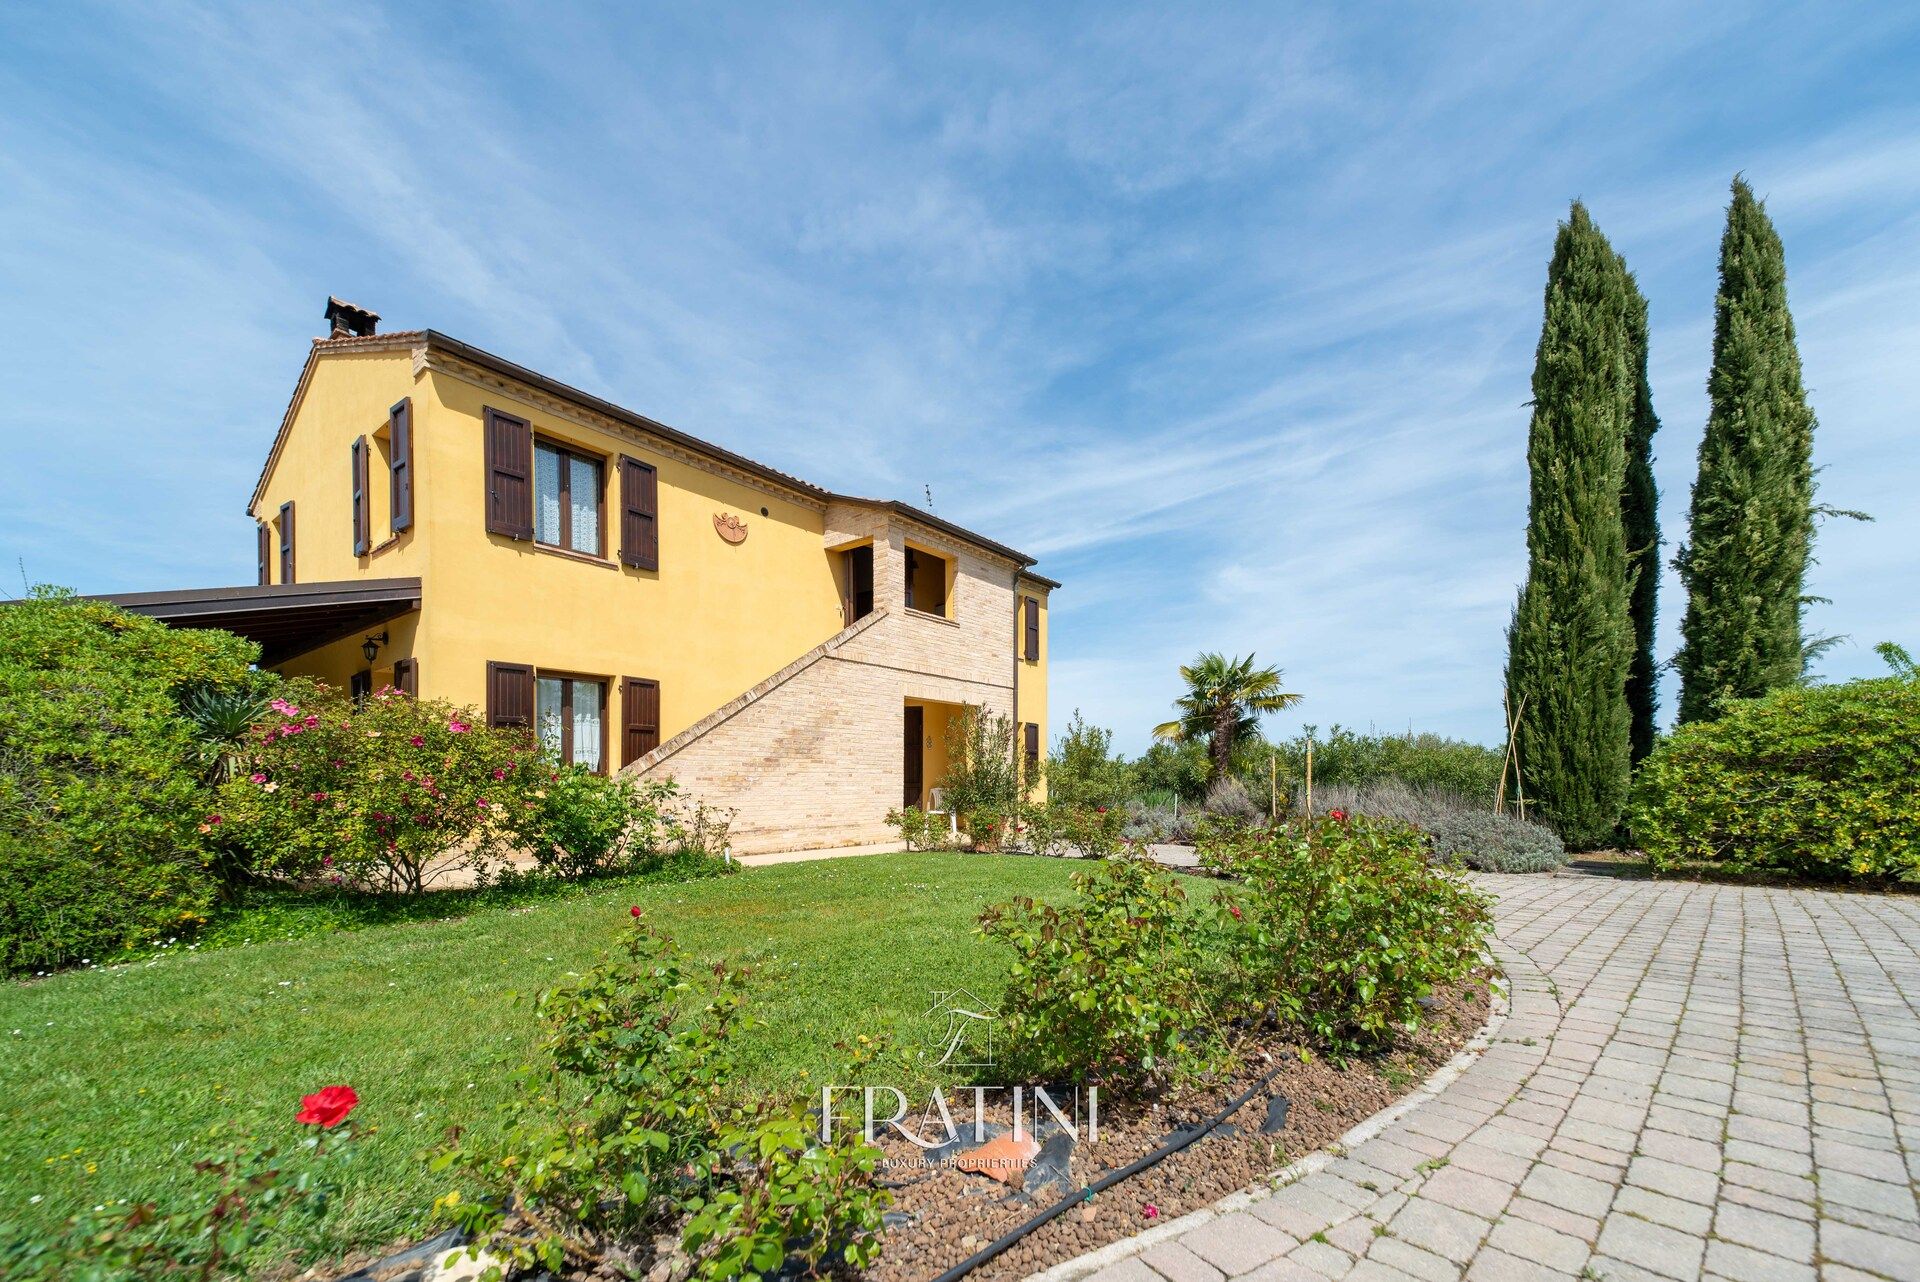 For sale villa in quiet zone Morrovalle Marche